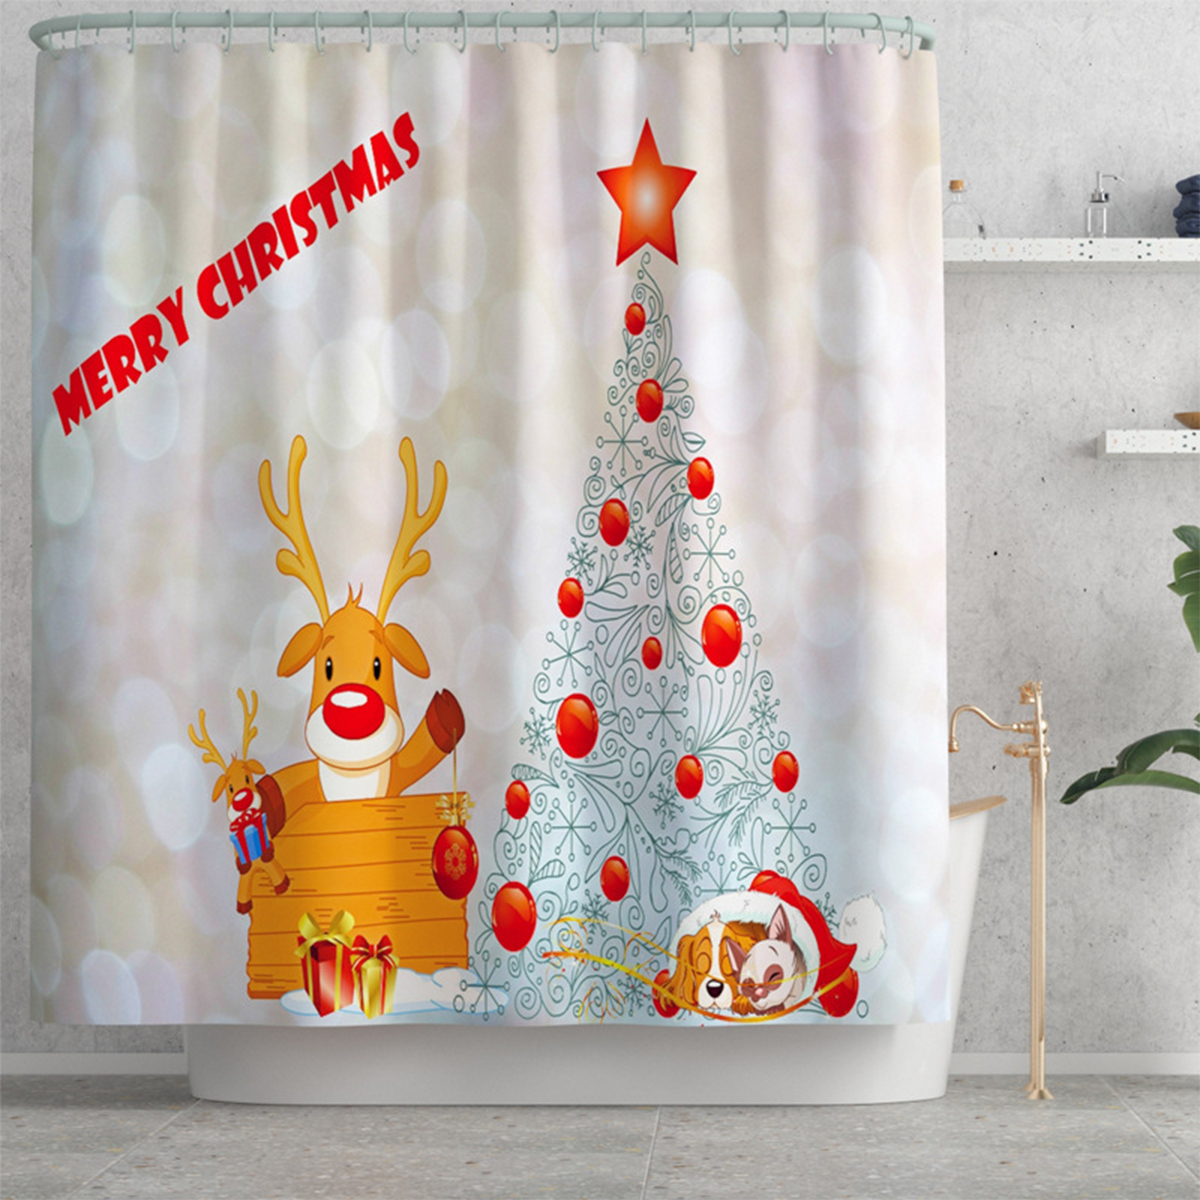 Christmas-Tree-Xmas-Bathroom-Shower-Curtain-Toilet-Cover-Rug-Floor-Bath-Mat-1818013-8